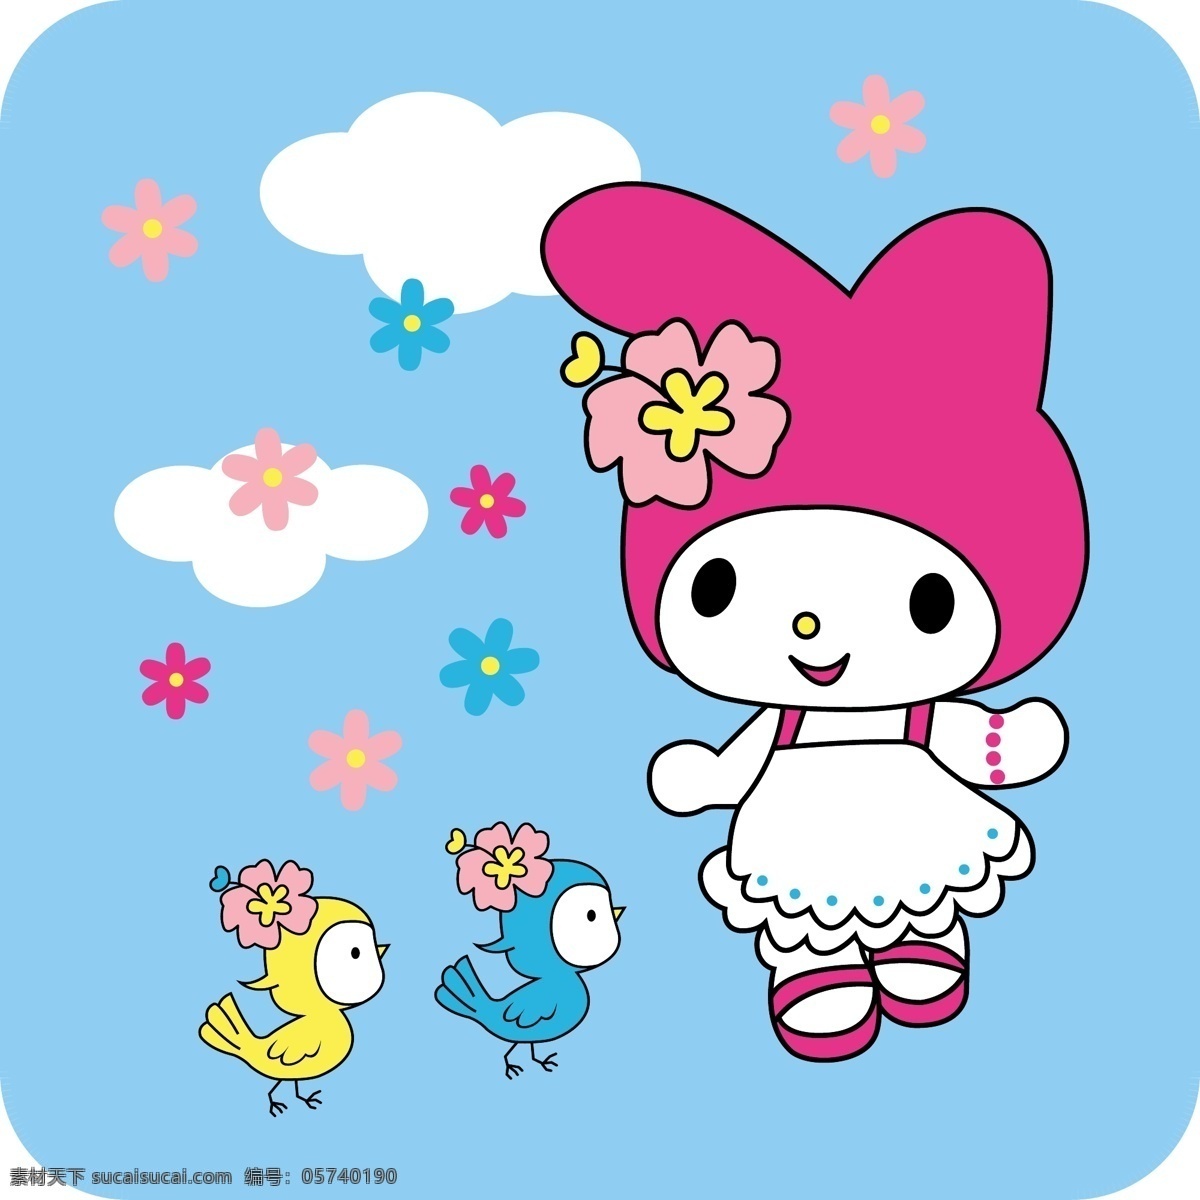 欢乐 小 兔 动画 儿童幼儿 卡通 矢量人物 兔子 小鸡 矢量 模板下载 欢乐小兔 psd源文件